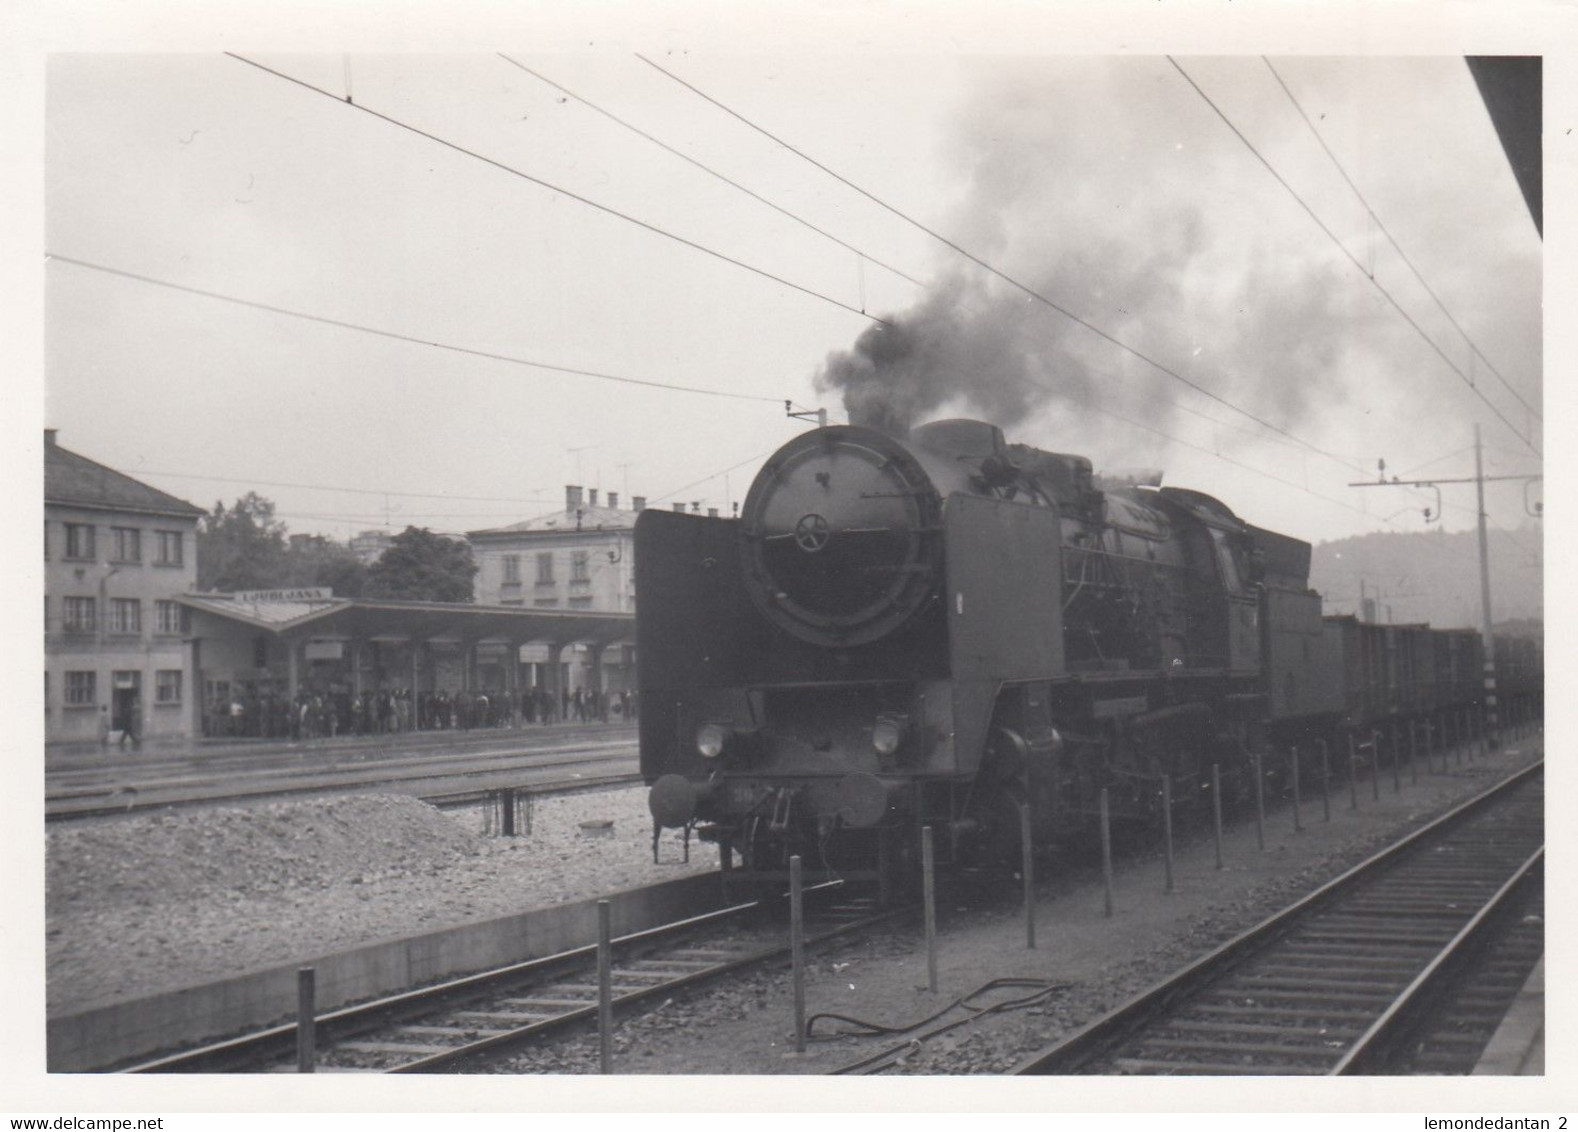 917_001 Ljubljana - Train in station - 1964.jpg